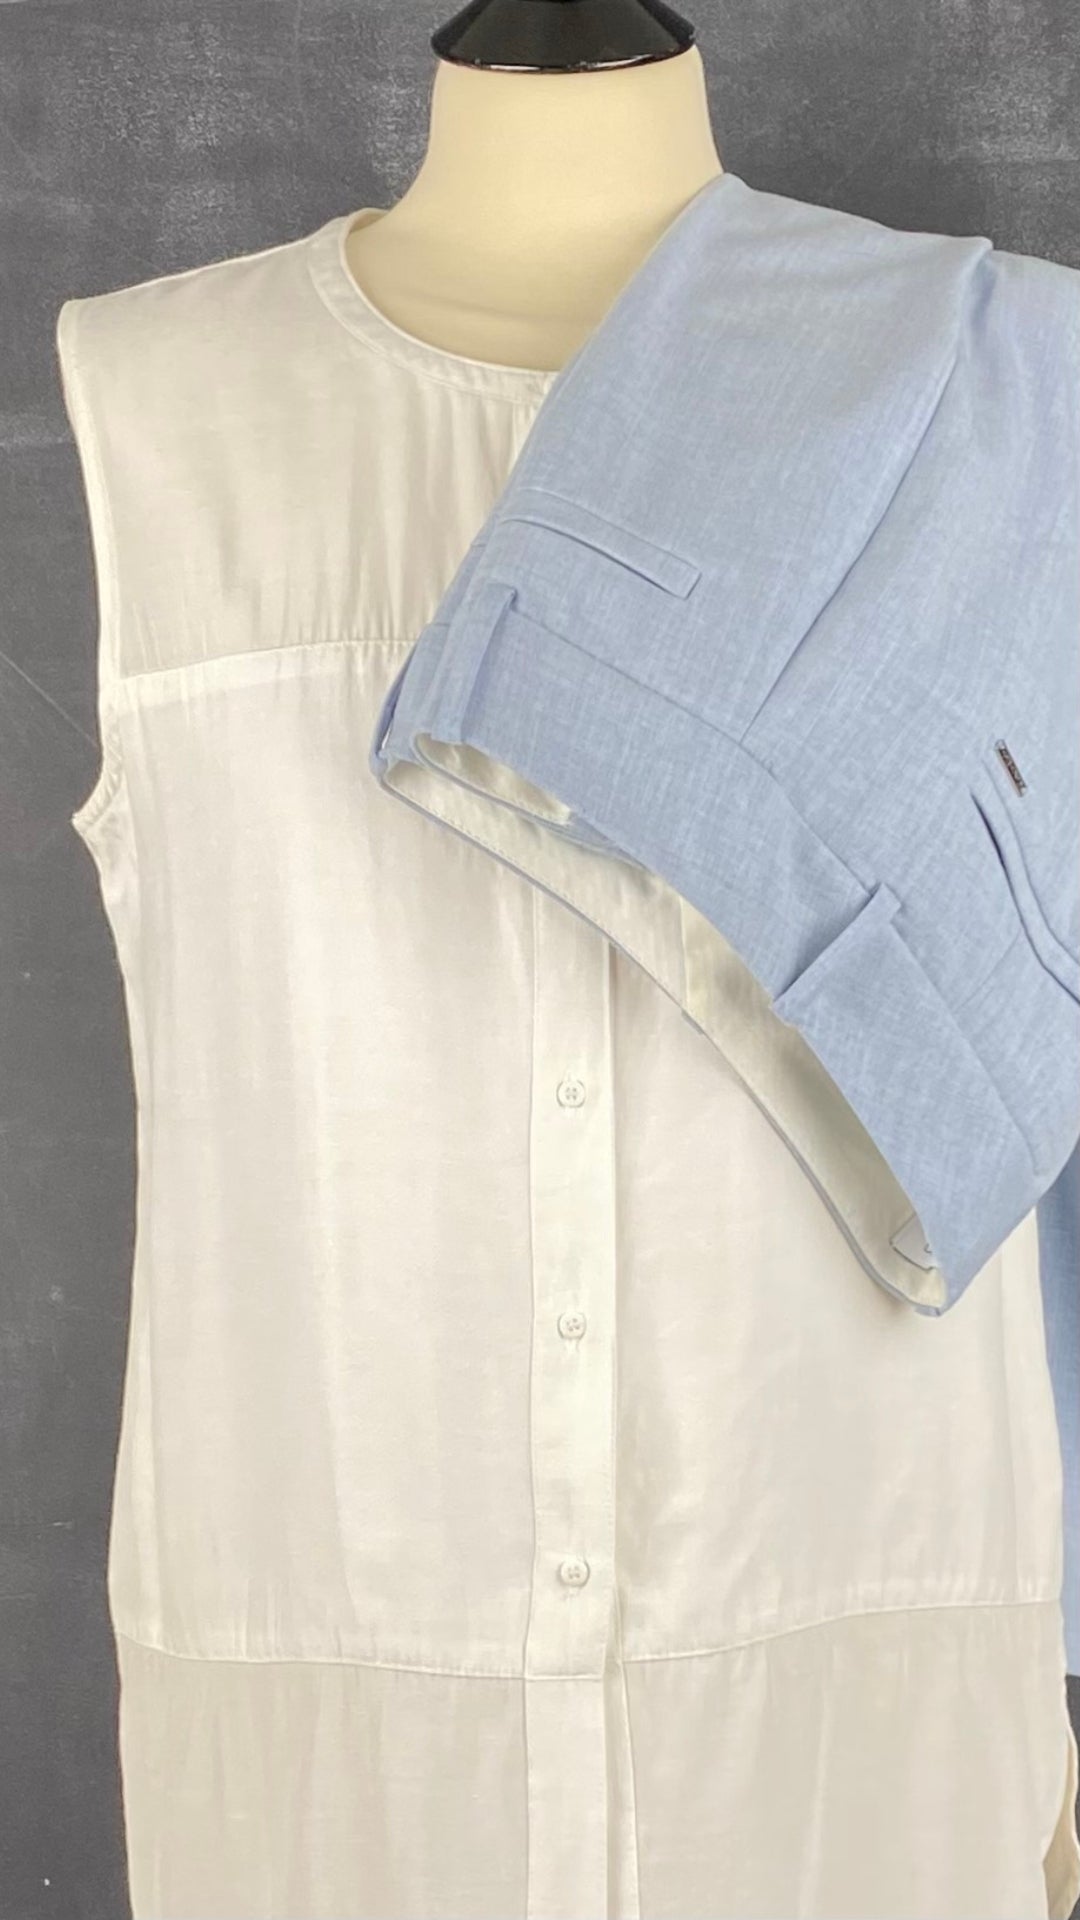 Pantalon droit bleu ciel Calvin Klein, taille 2 (small). Vue de l'agencement avec la blouse crème.